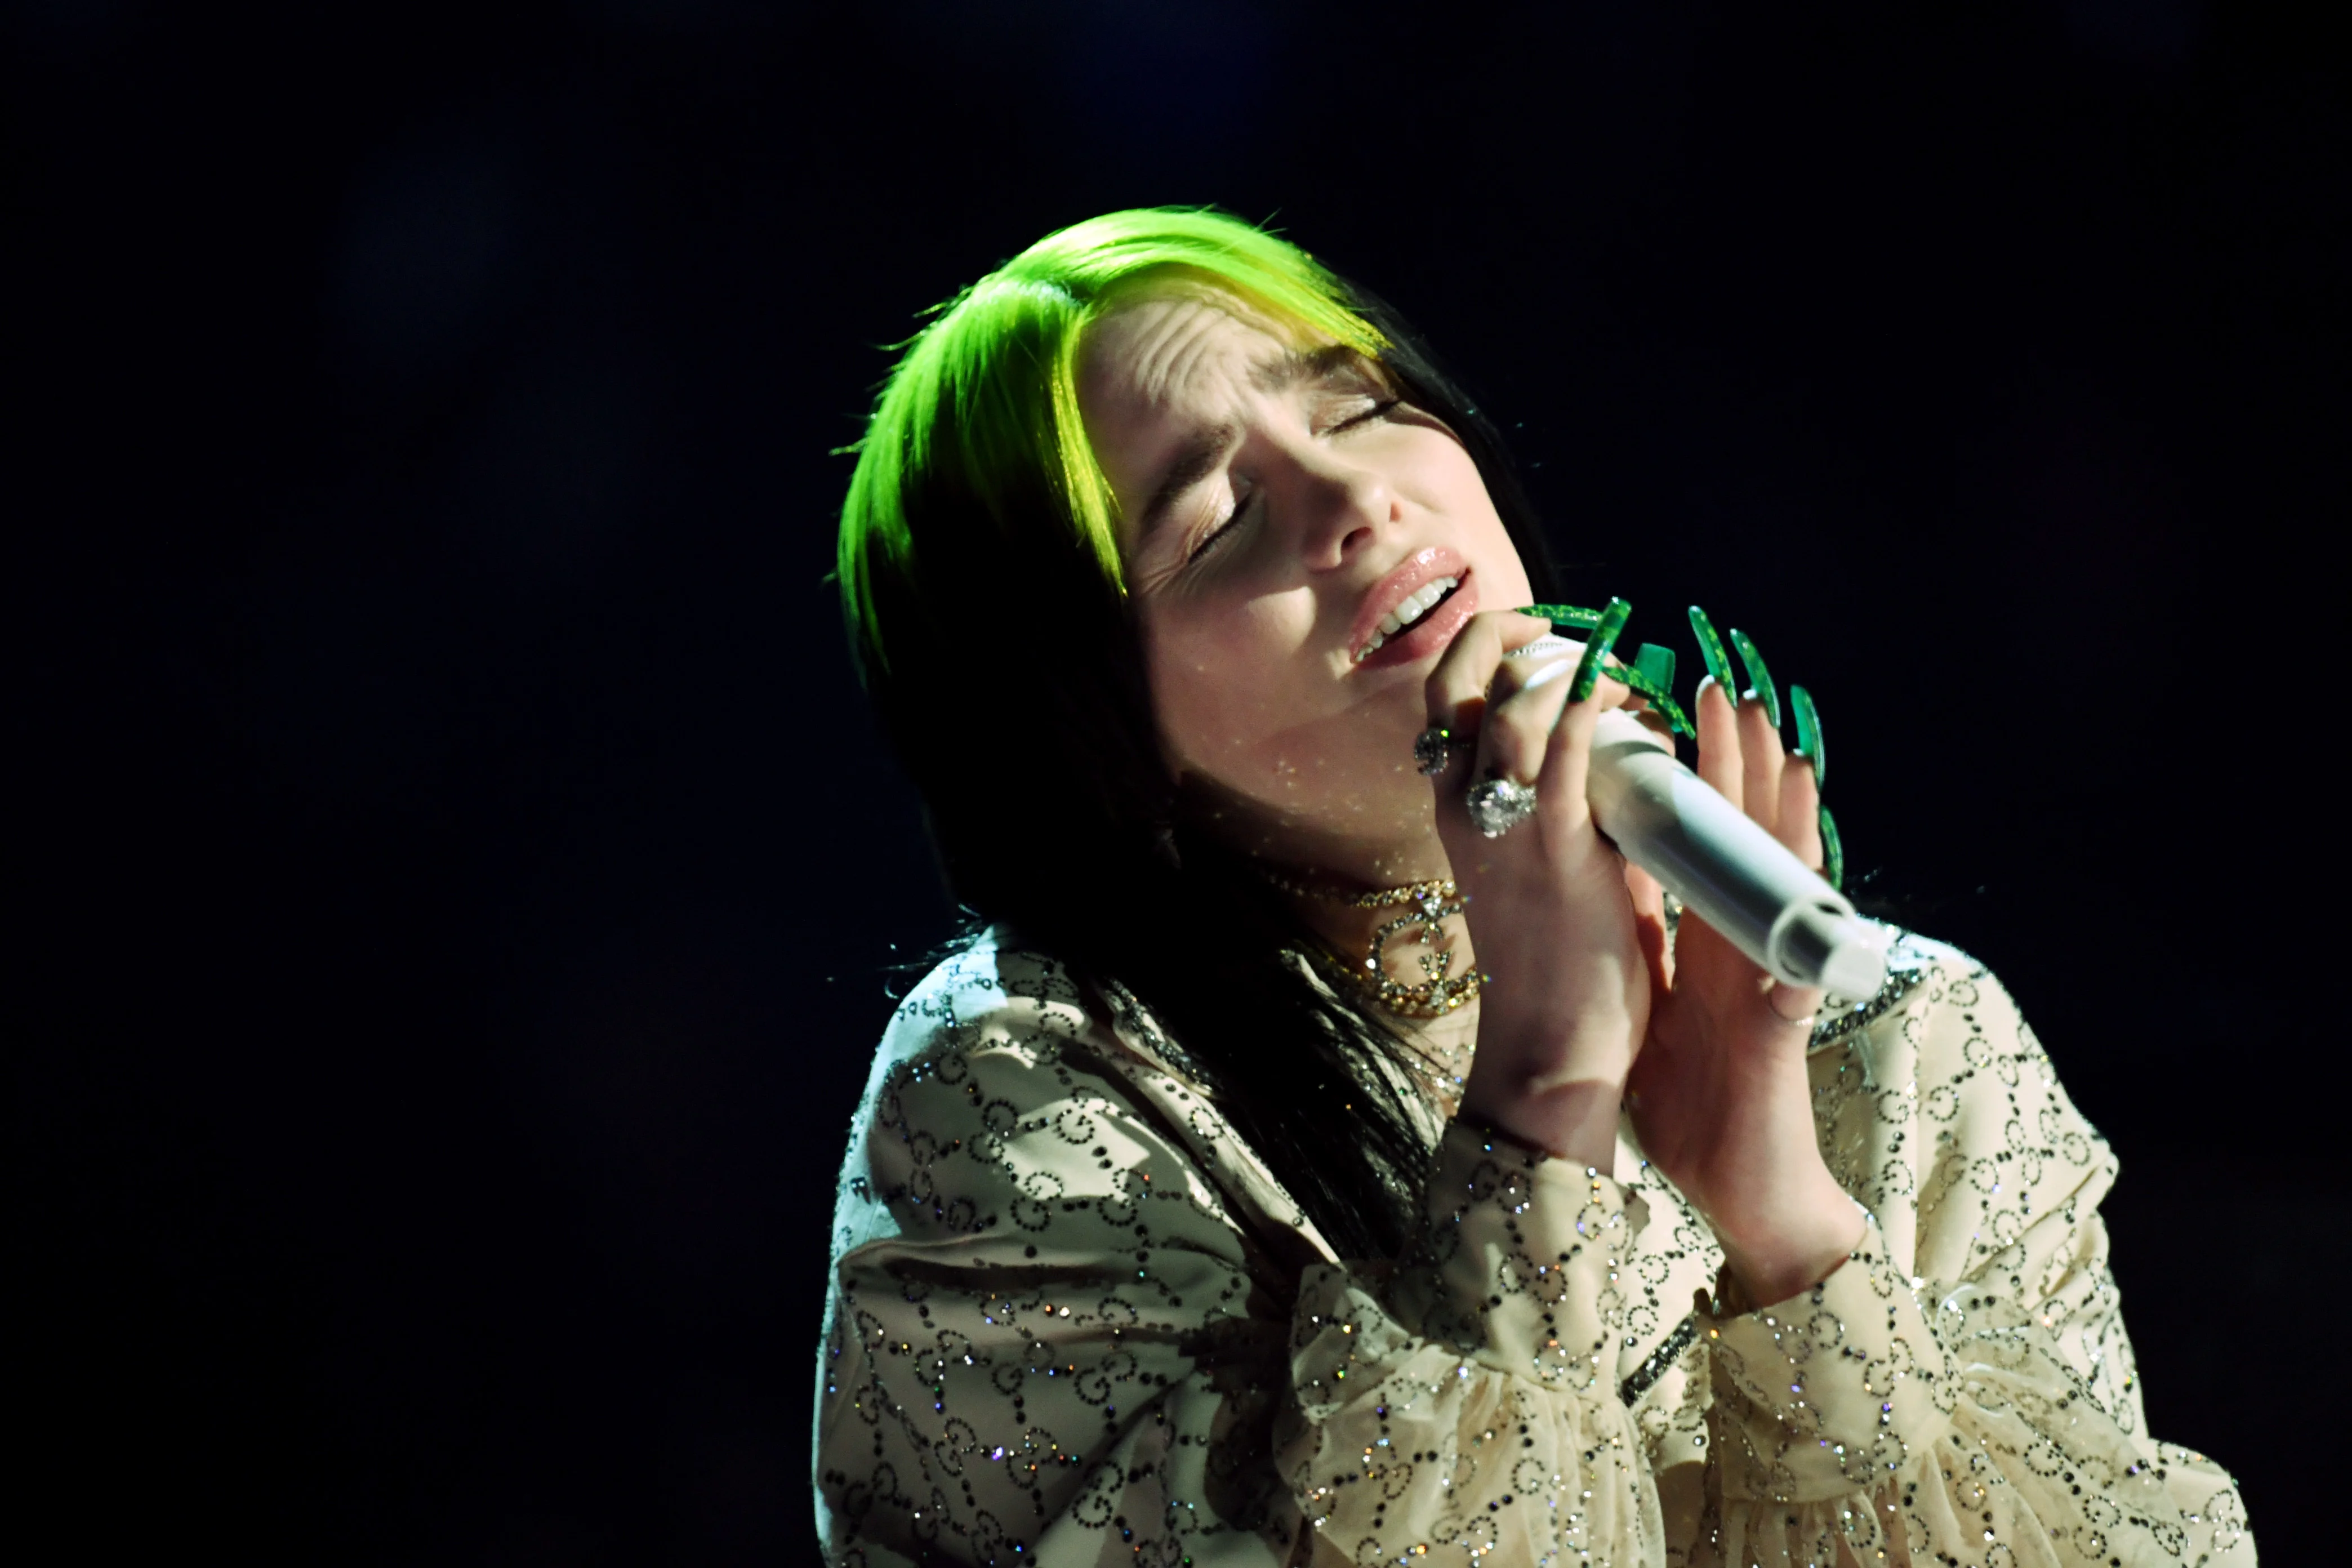 Foto de Billie Eilish cantando. Nela, a cantora está segurando um microfone na mão esquerda, próximo a sua boca. Billie é uma mulher branca, de cabelos pretos, mas a raiz pintada na cor verde neon. Ela veste um a blusa bege de mangas compridas e tem unhas compridas com esmalte verde.